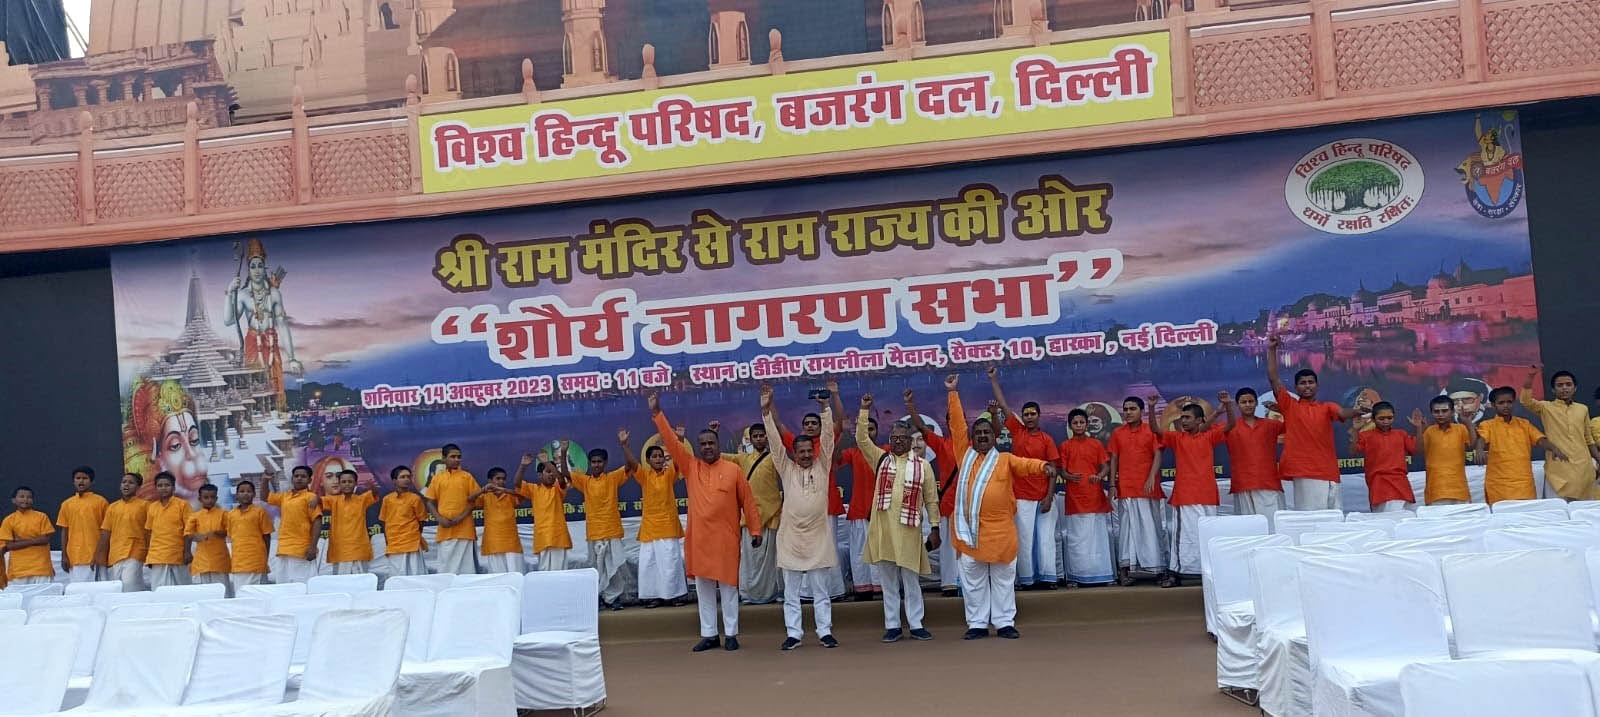 विश्व हिंदू परिषद दिल्ली प्रांत के सभी जिलों और प्रखंडों में निकाले गए शौर्य जागरण यात्रा के समापन समारोह के अवसर 